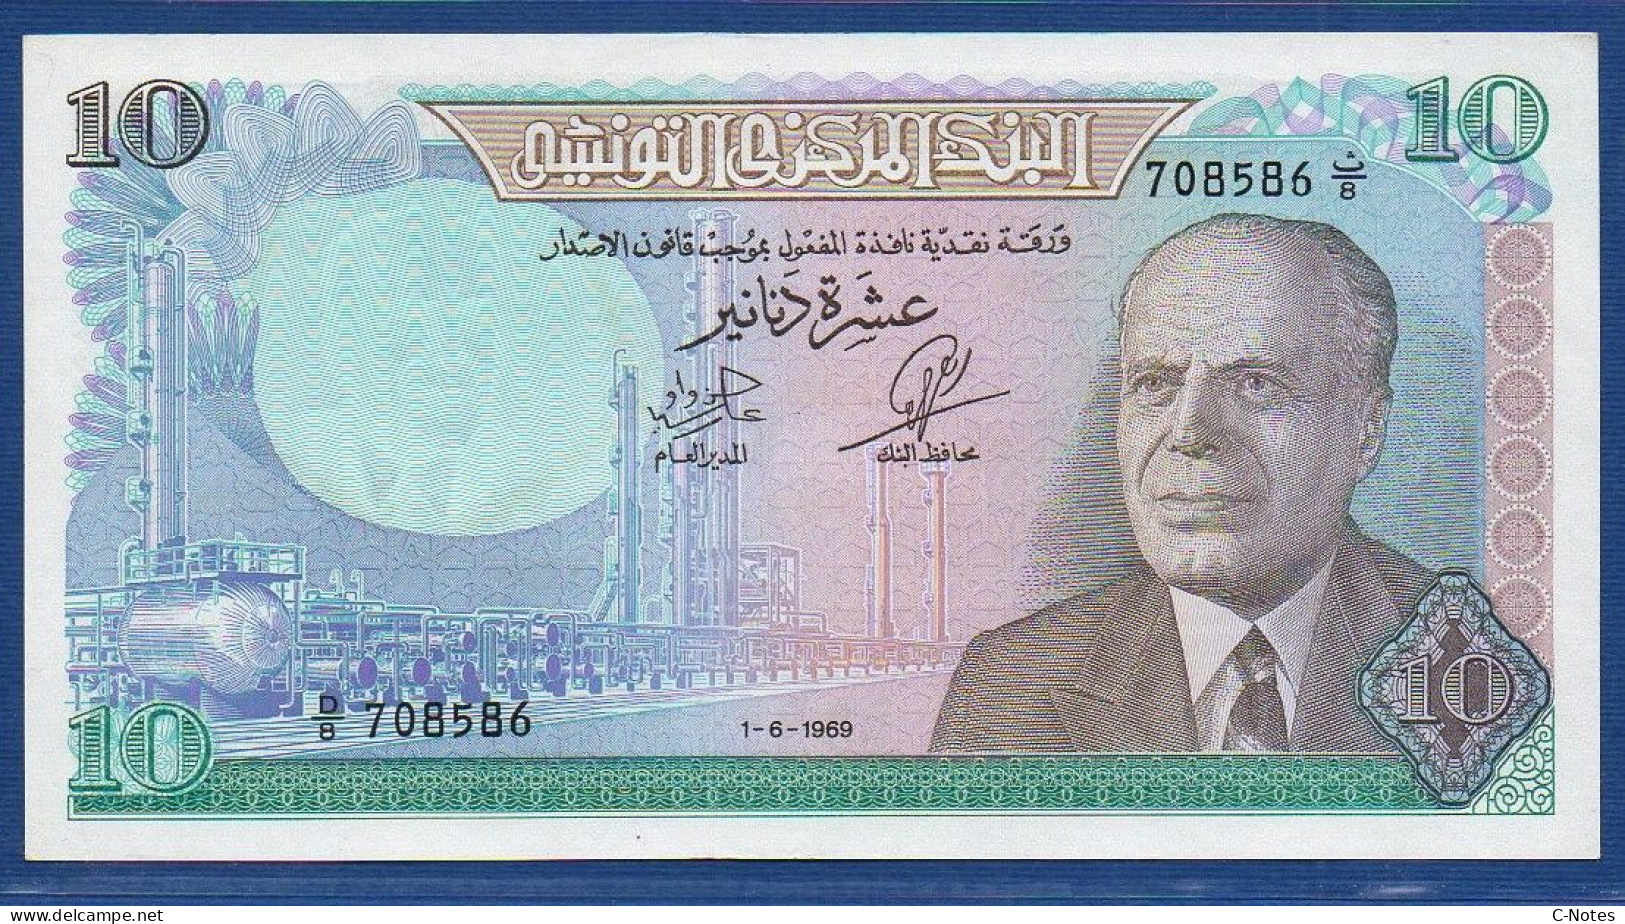 TUNISIA - P.65 – 10 Dinars 1969 UNC, S/n D/8 708586 - Tunisia